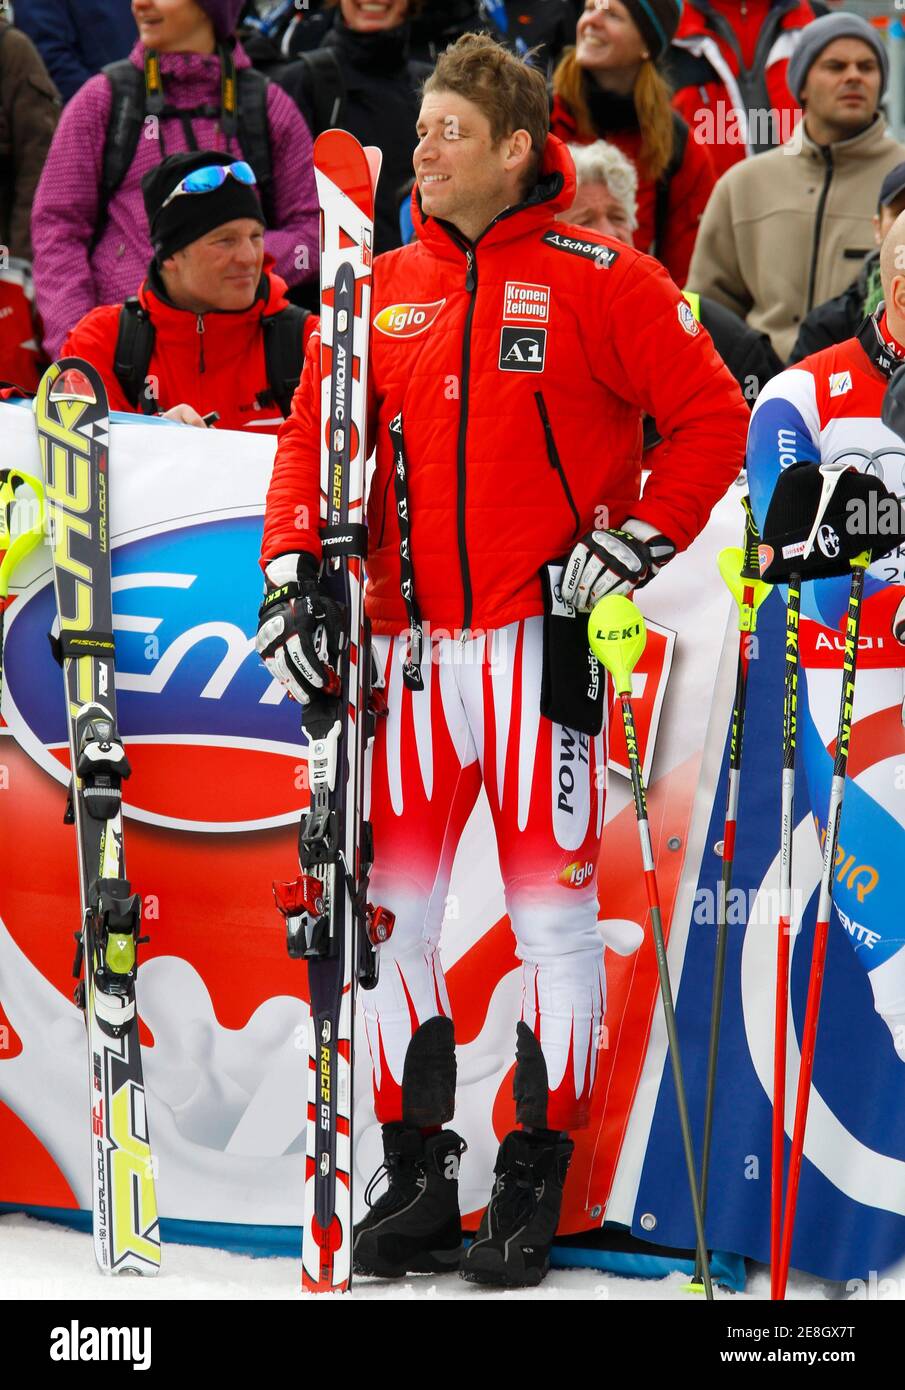 Benjamin Raich von Österreich lächelt bei der Siegerehrung nach den letzten Rennen der Saison in Garmisch-Partenkirchen am 13. März 2010. REUTERS/Wolfgang Rattay (DEUTSCHLAND - Tags: SKIFAHREN) Stockfoto